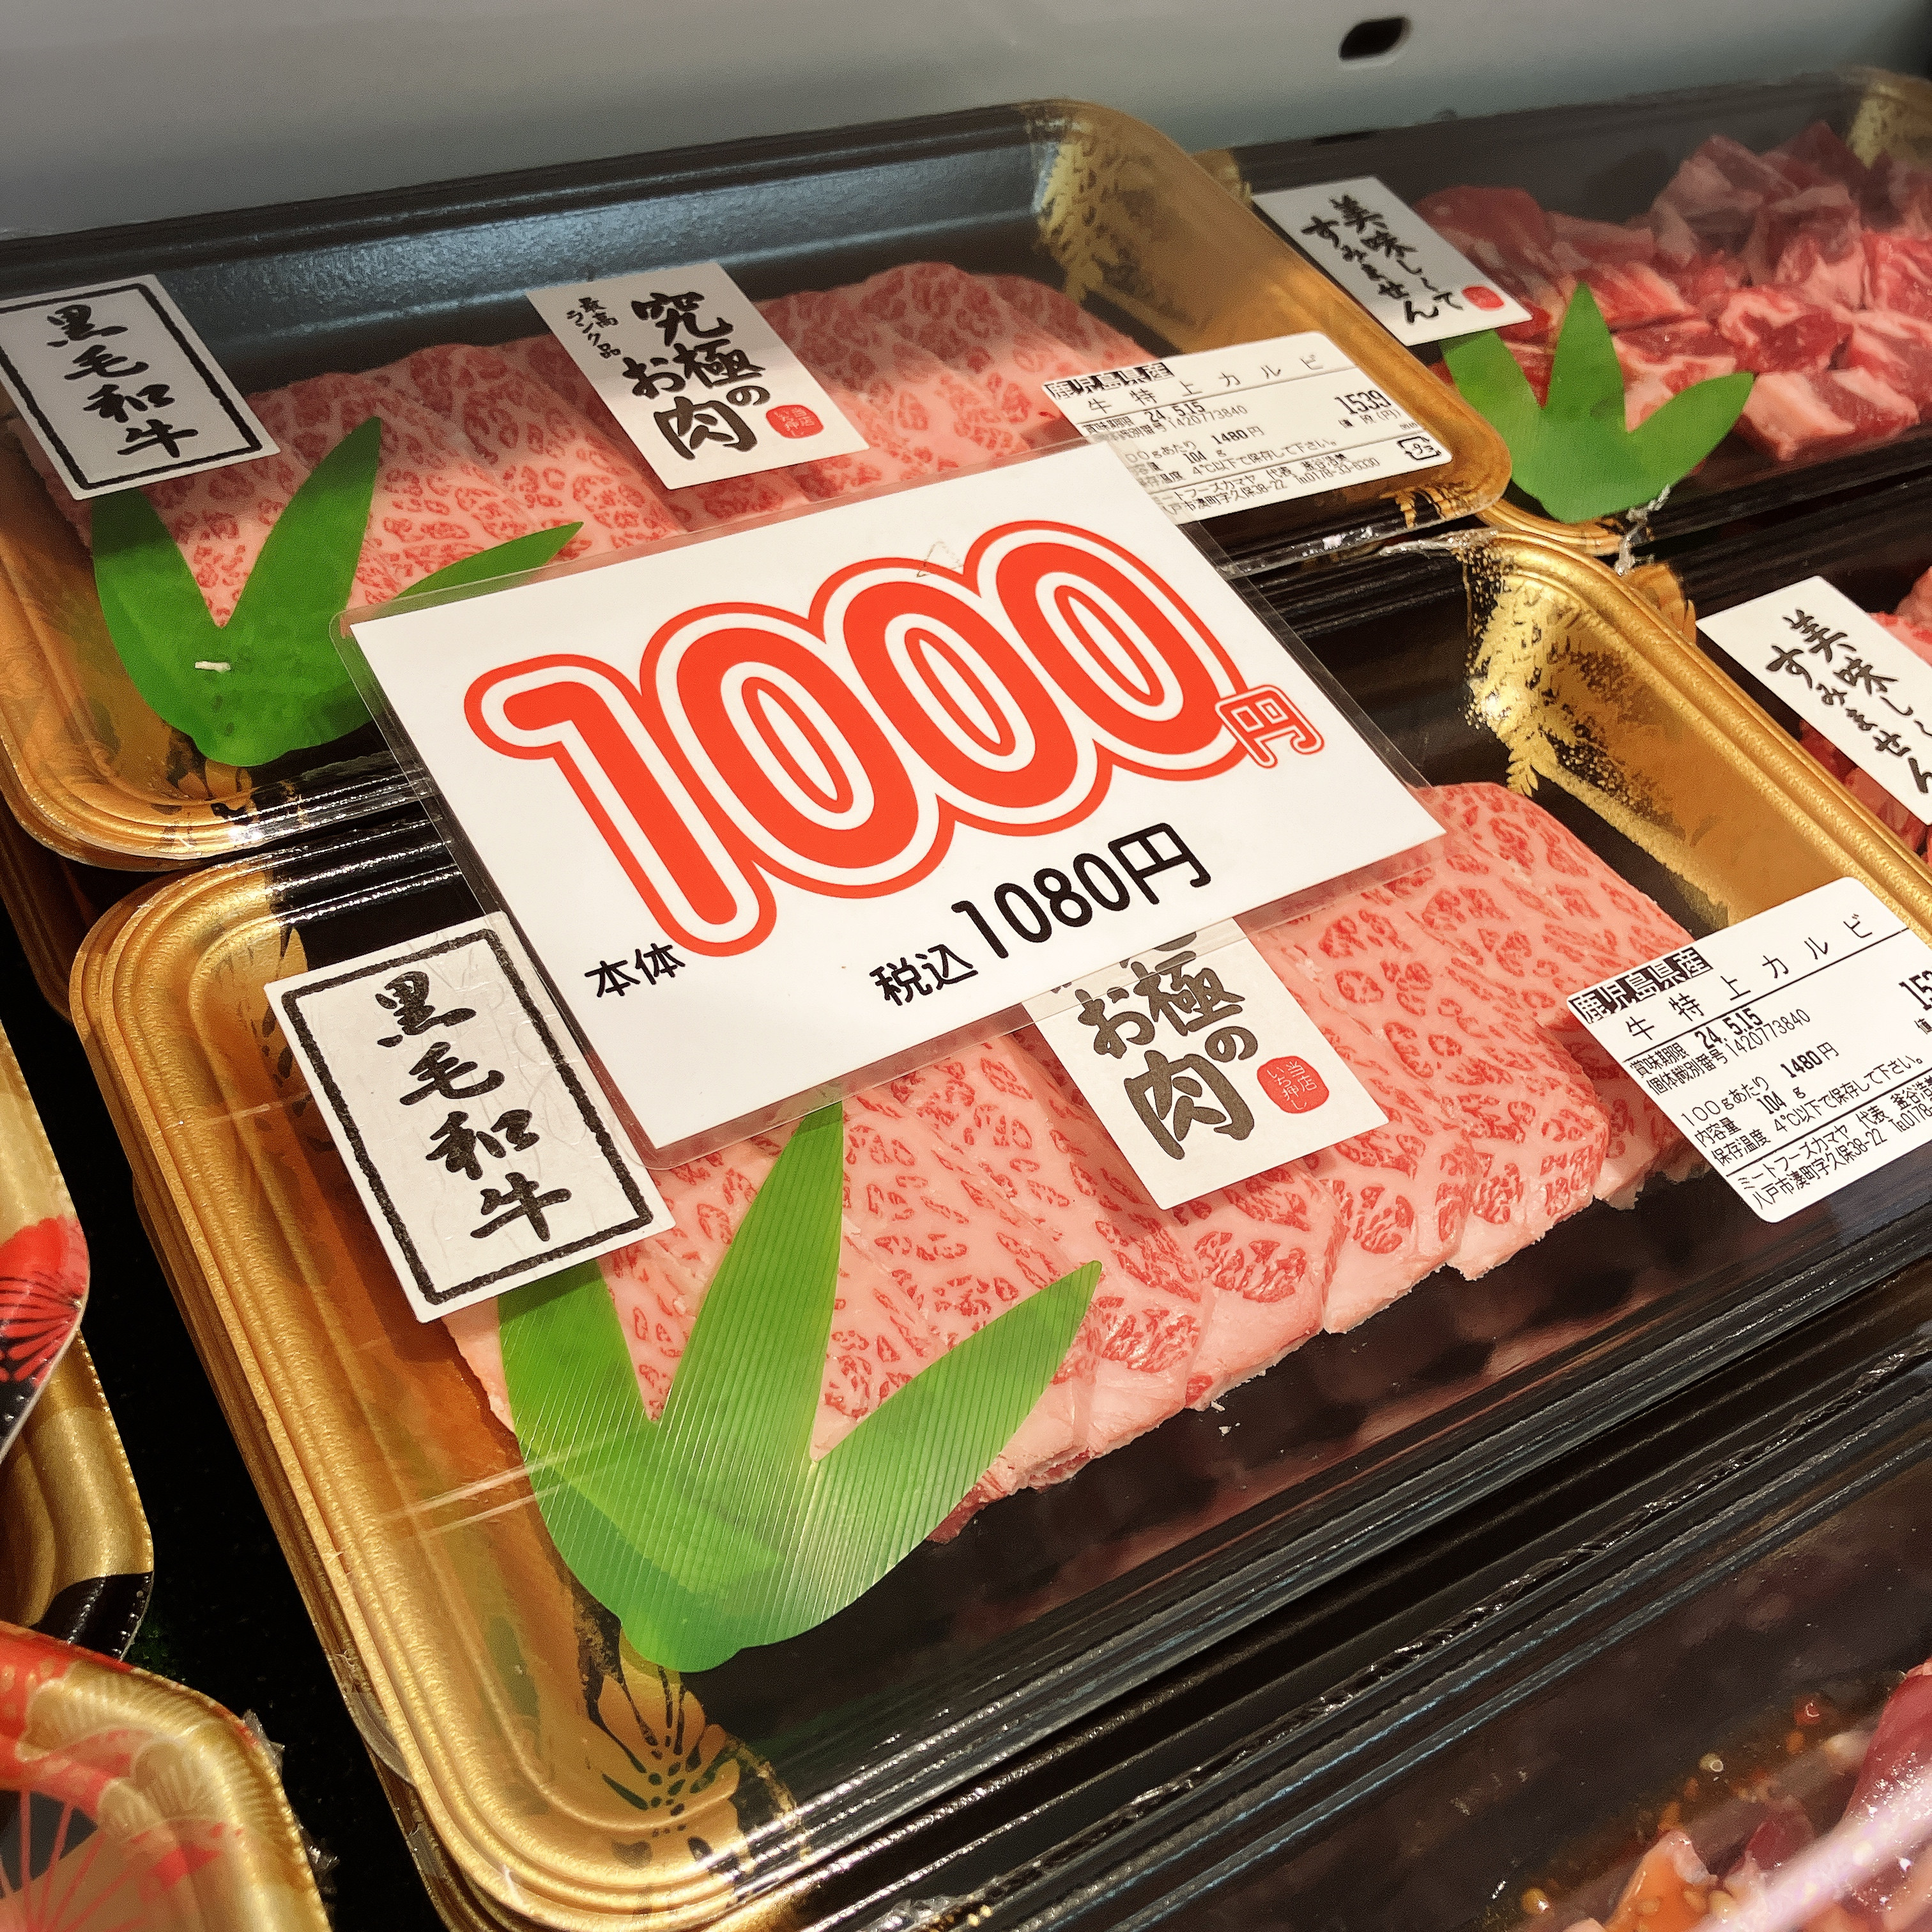 本日は鹿児島県産牛特上カルビなどがお買い得です。